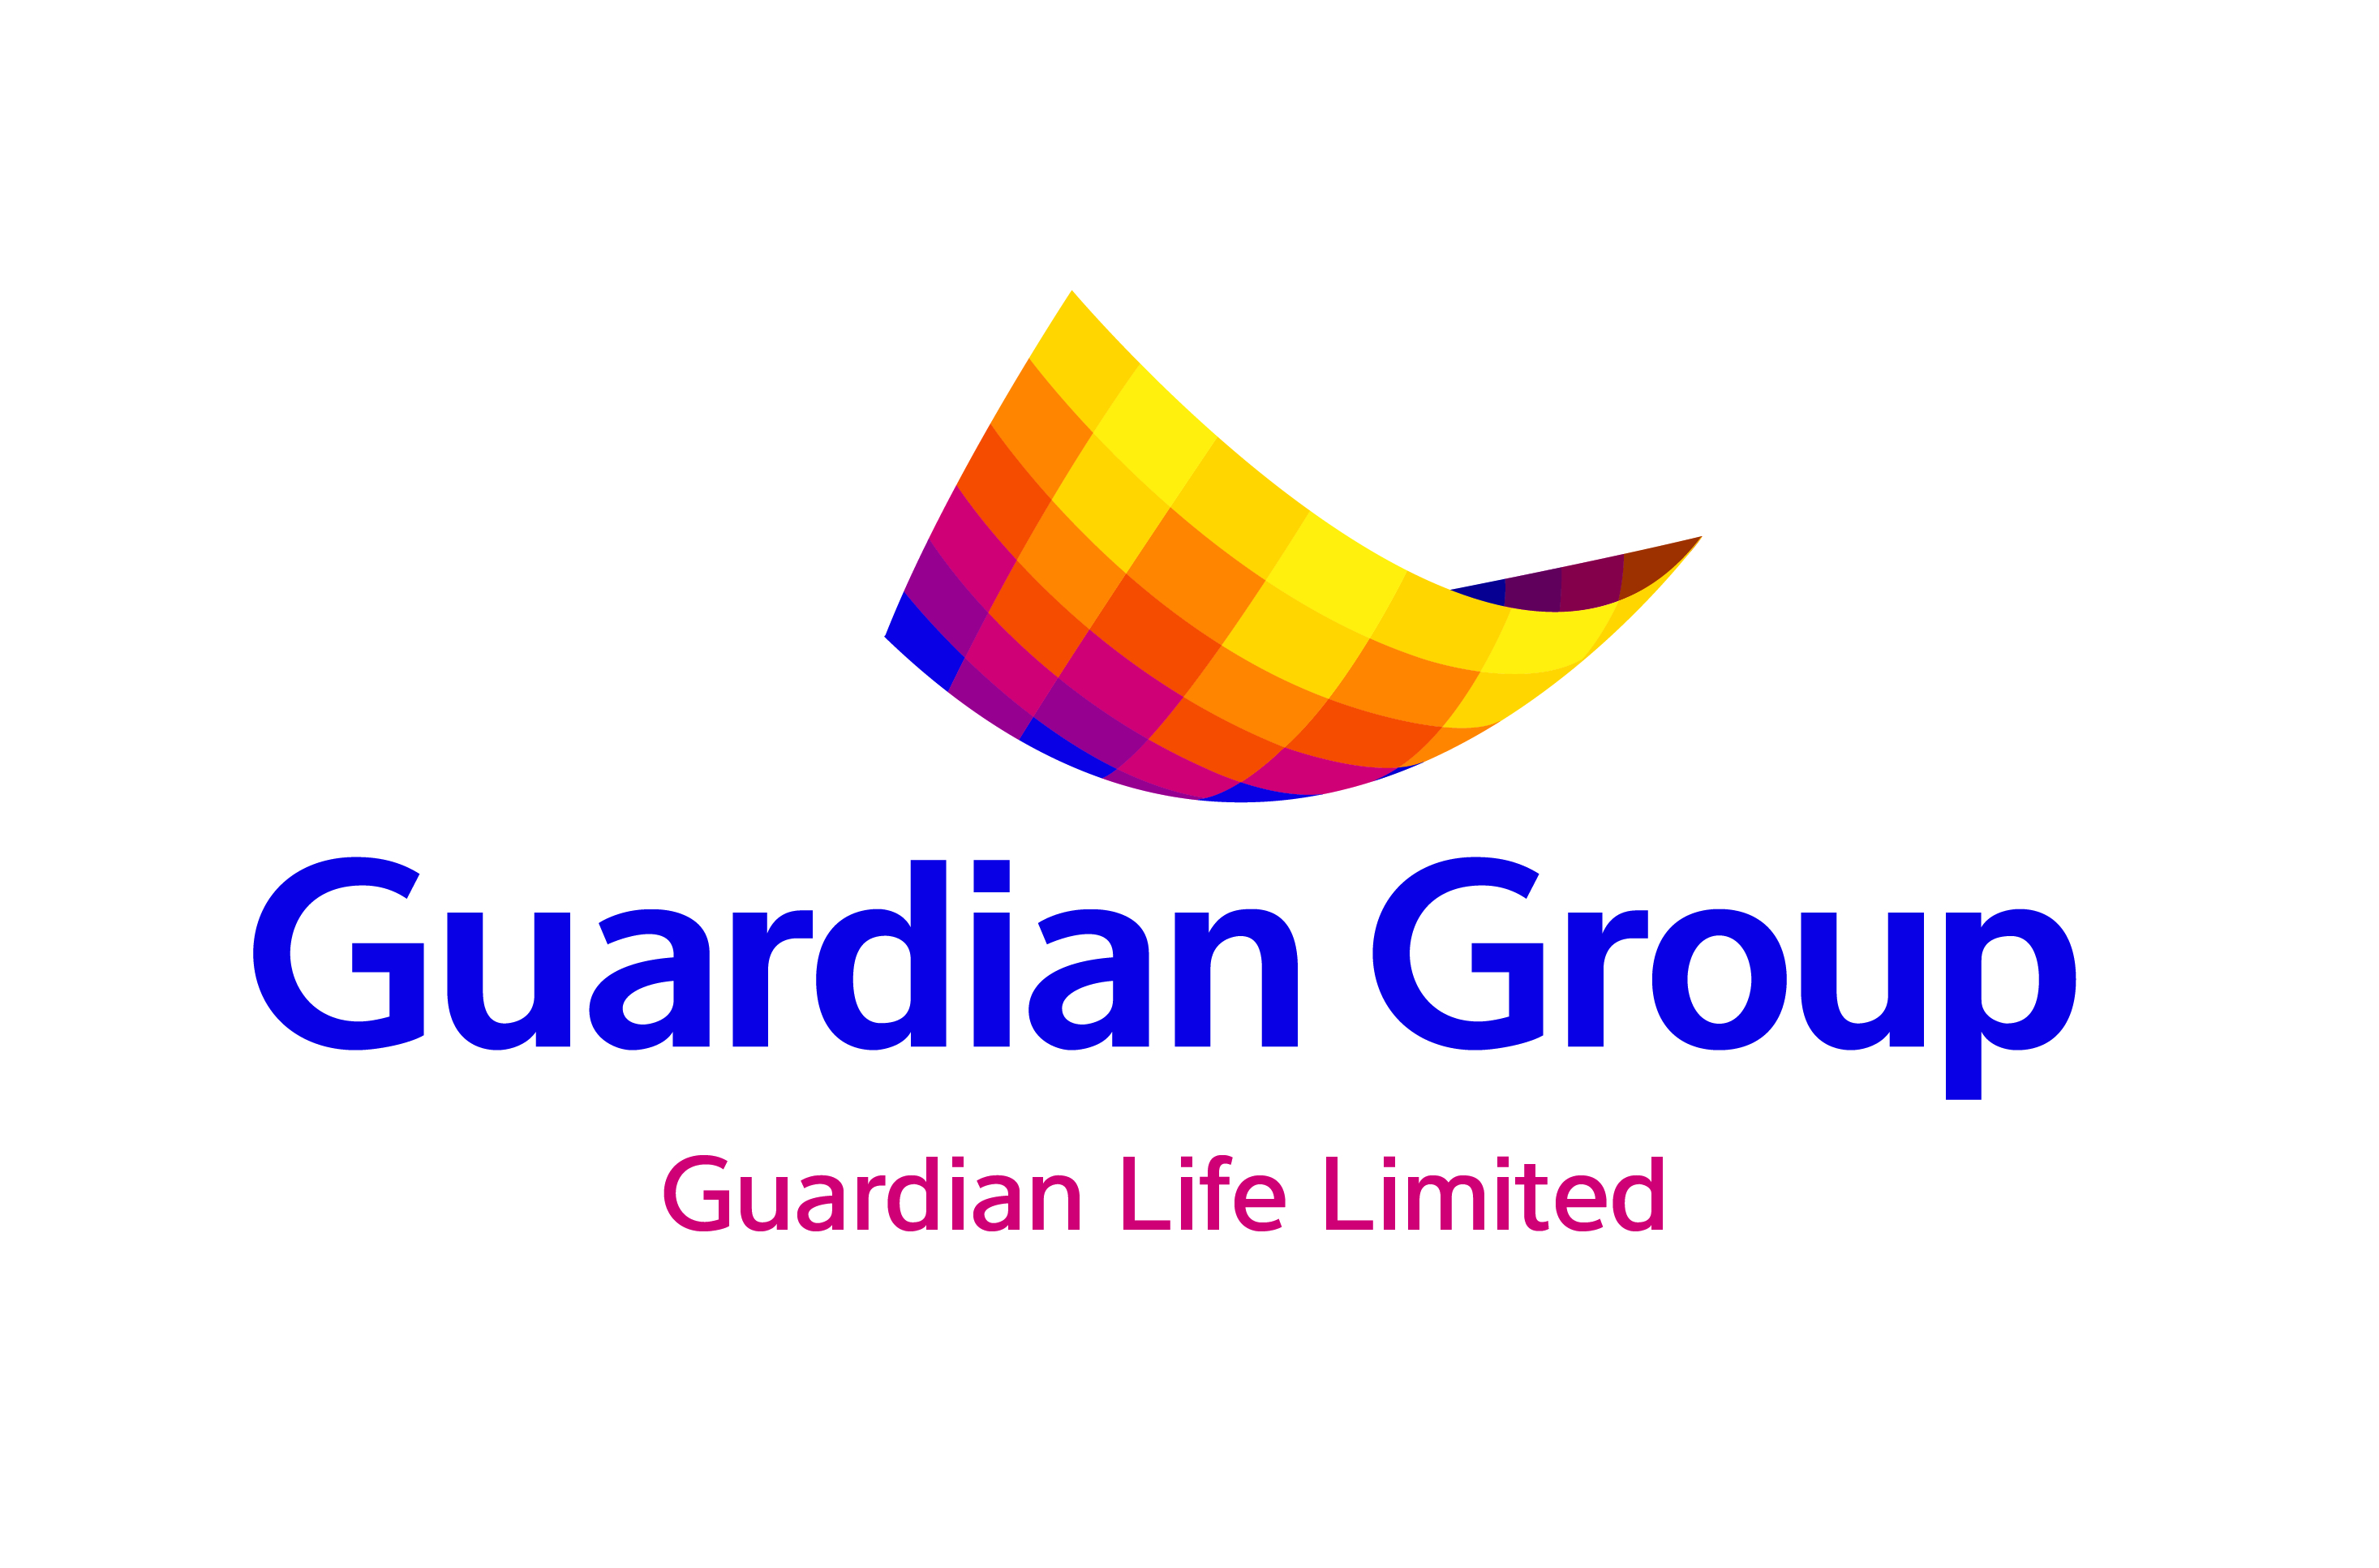  Guardian Group logo